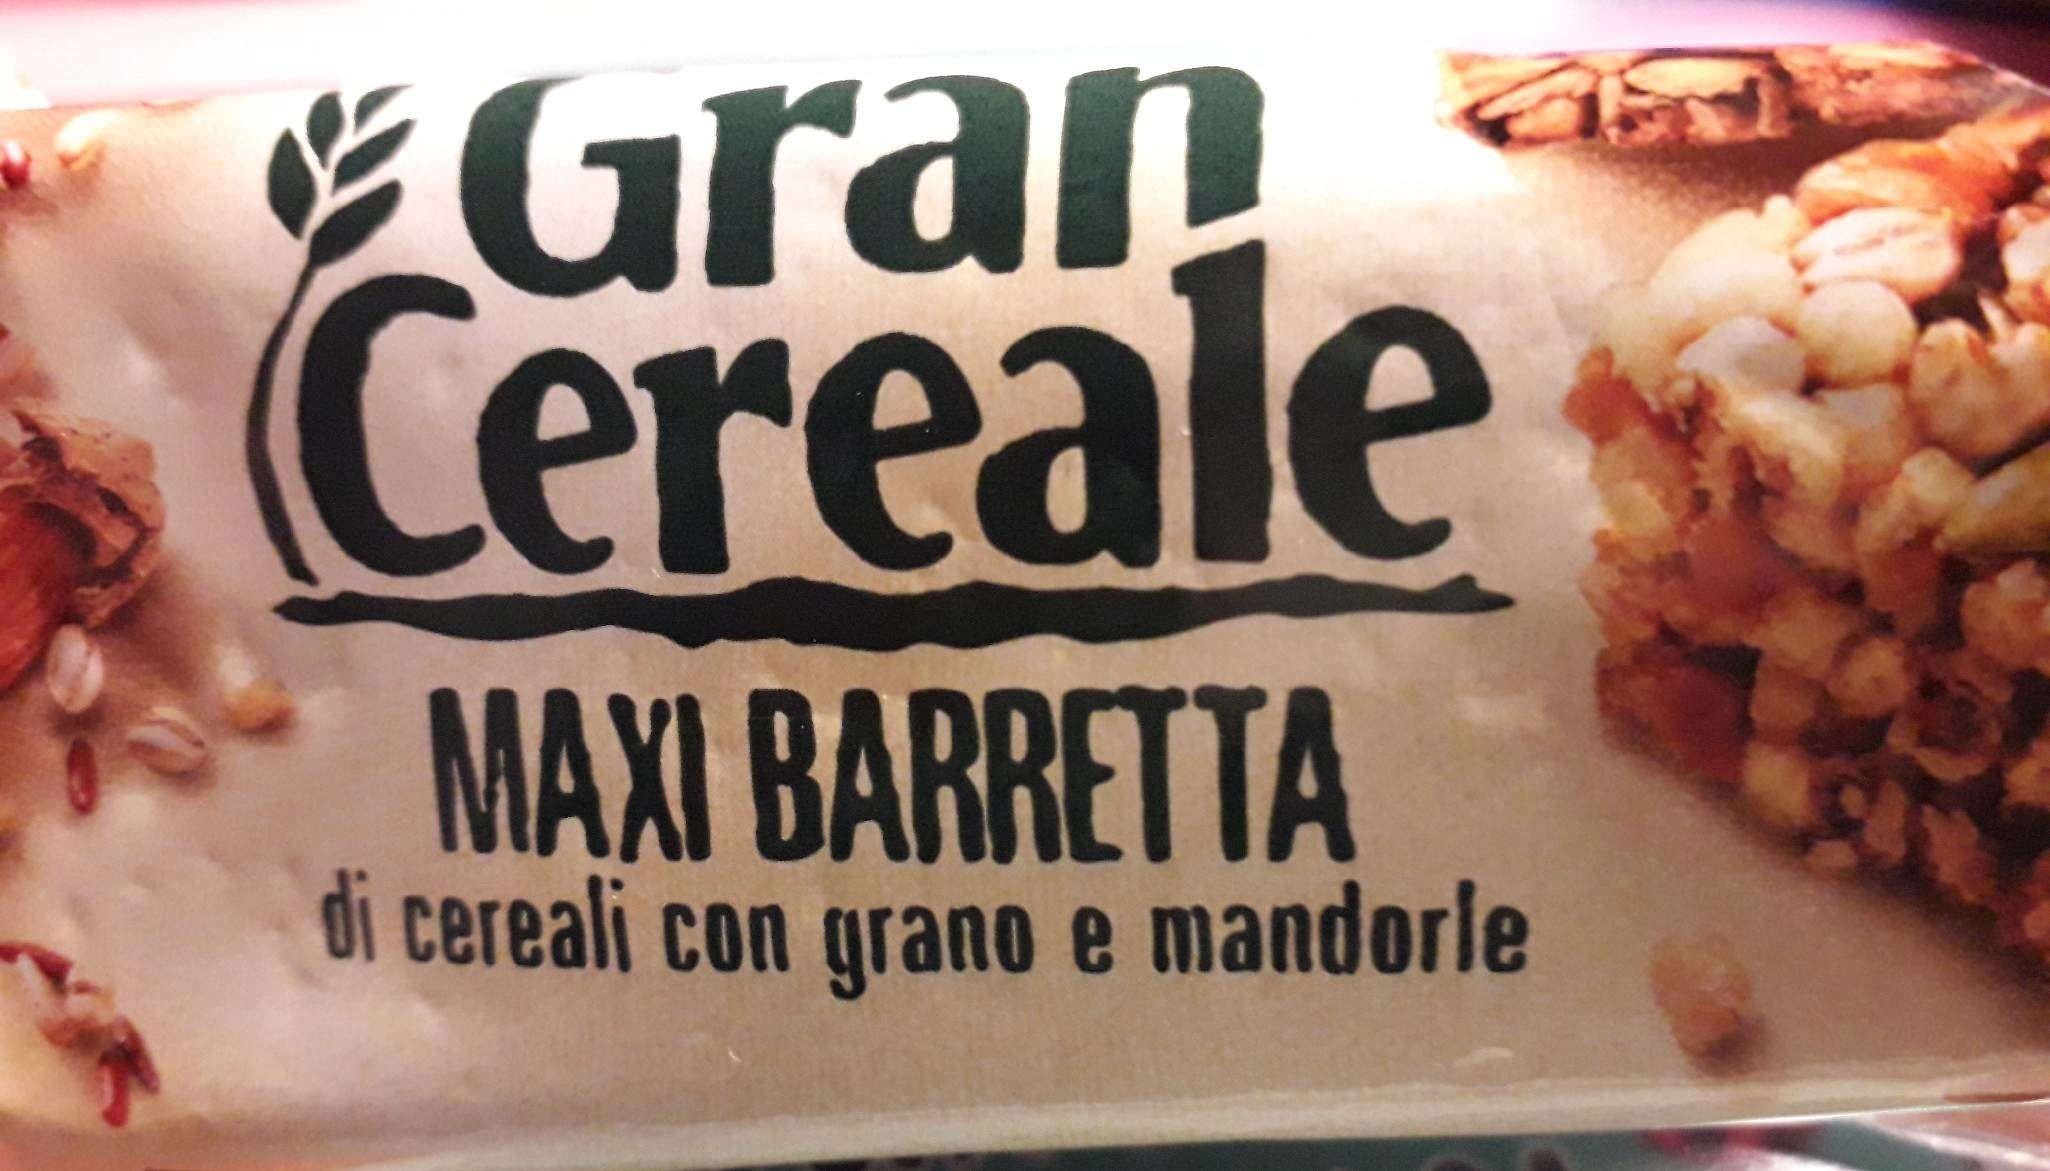 Maxi barretta di cereali con grano e mandorle - Prodotto